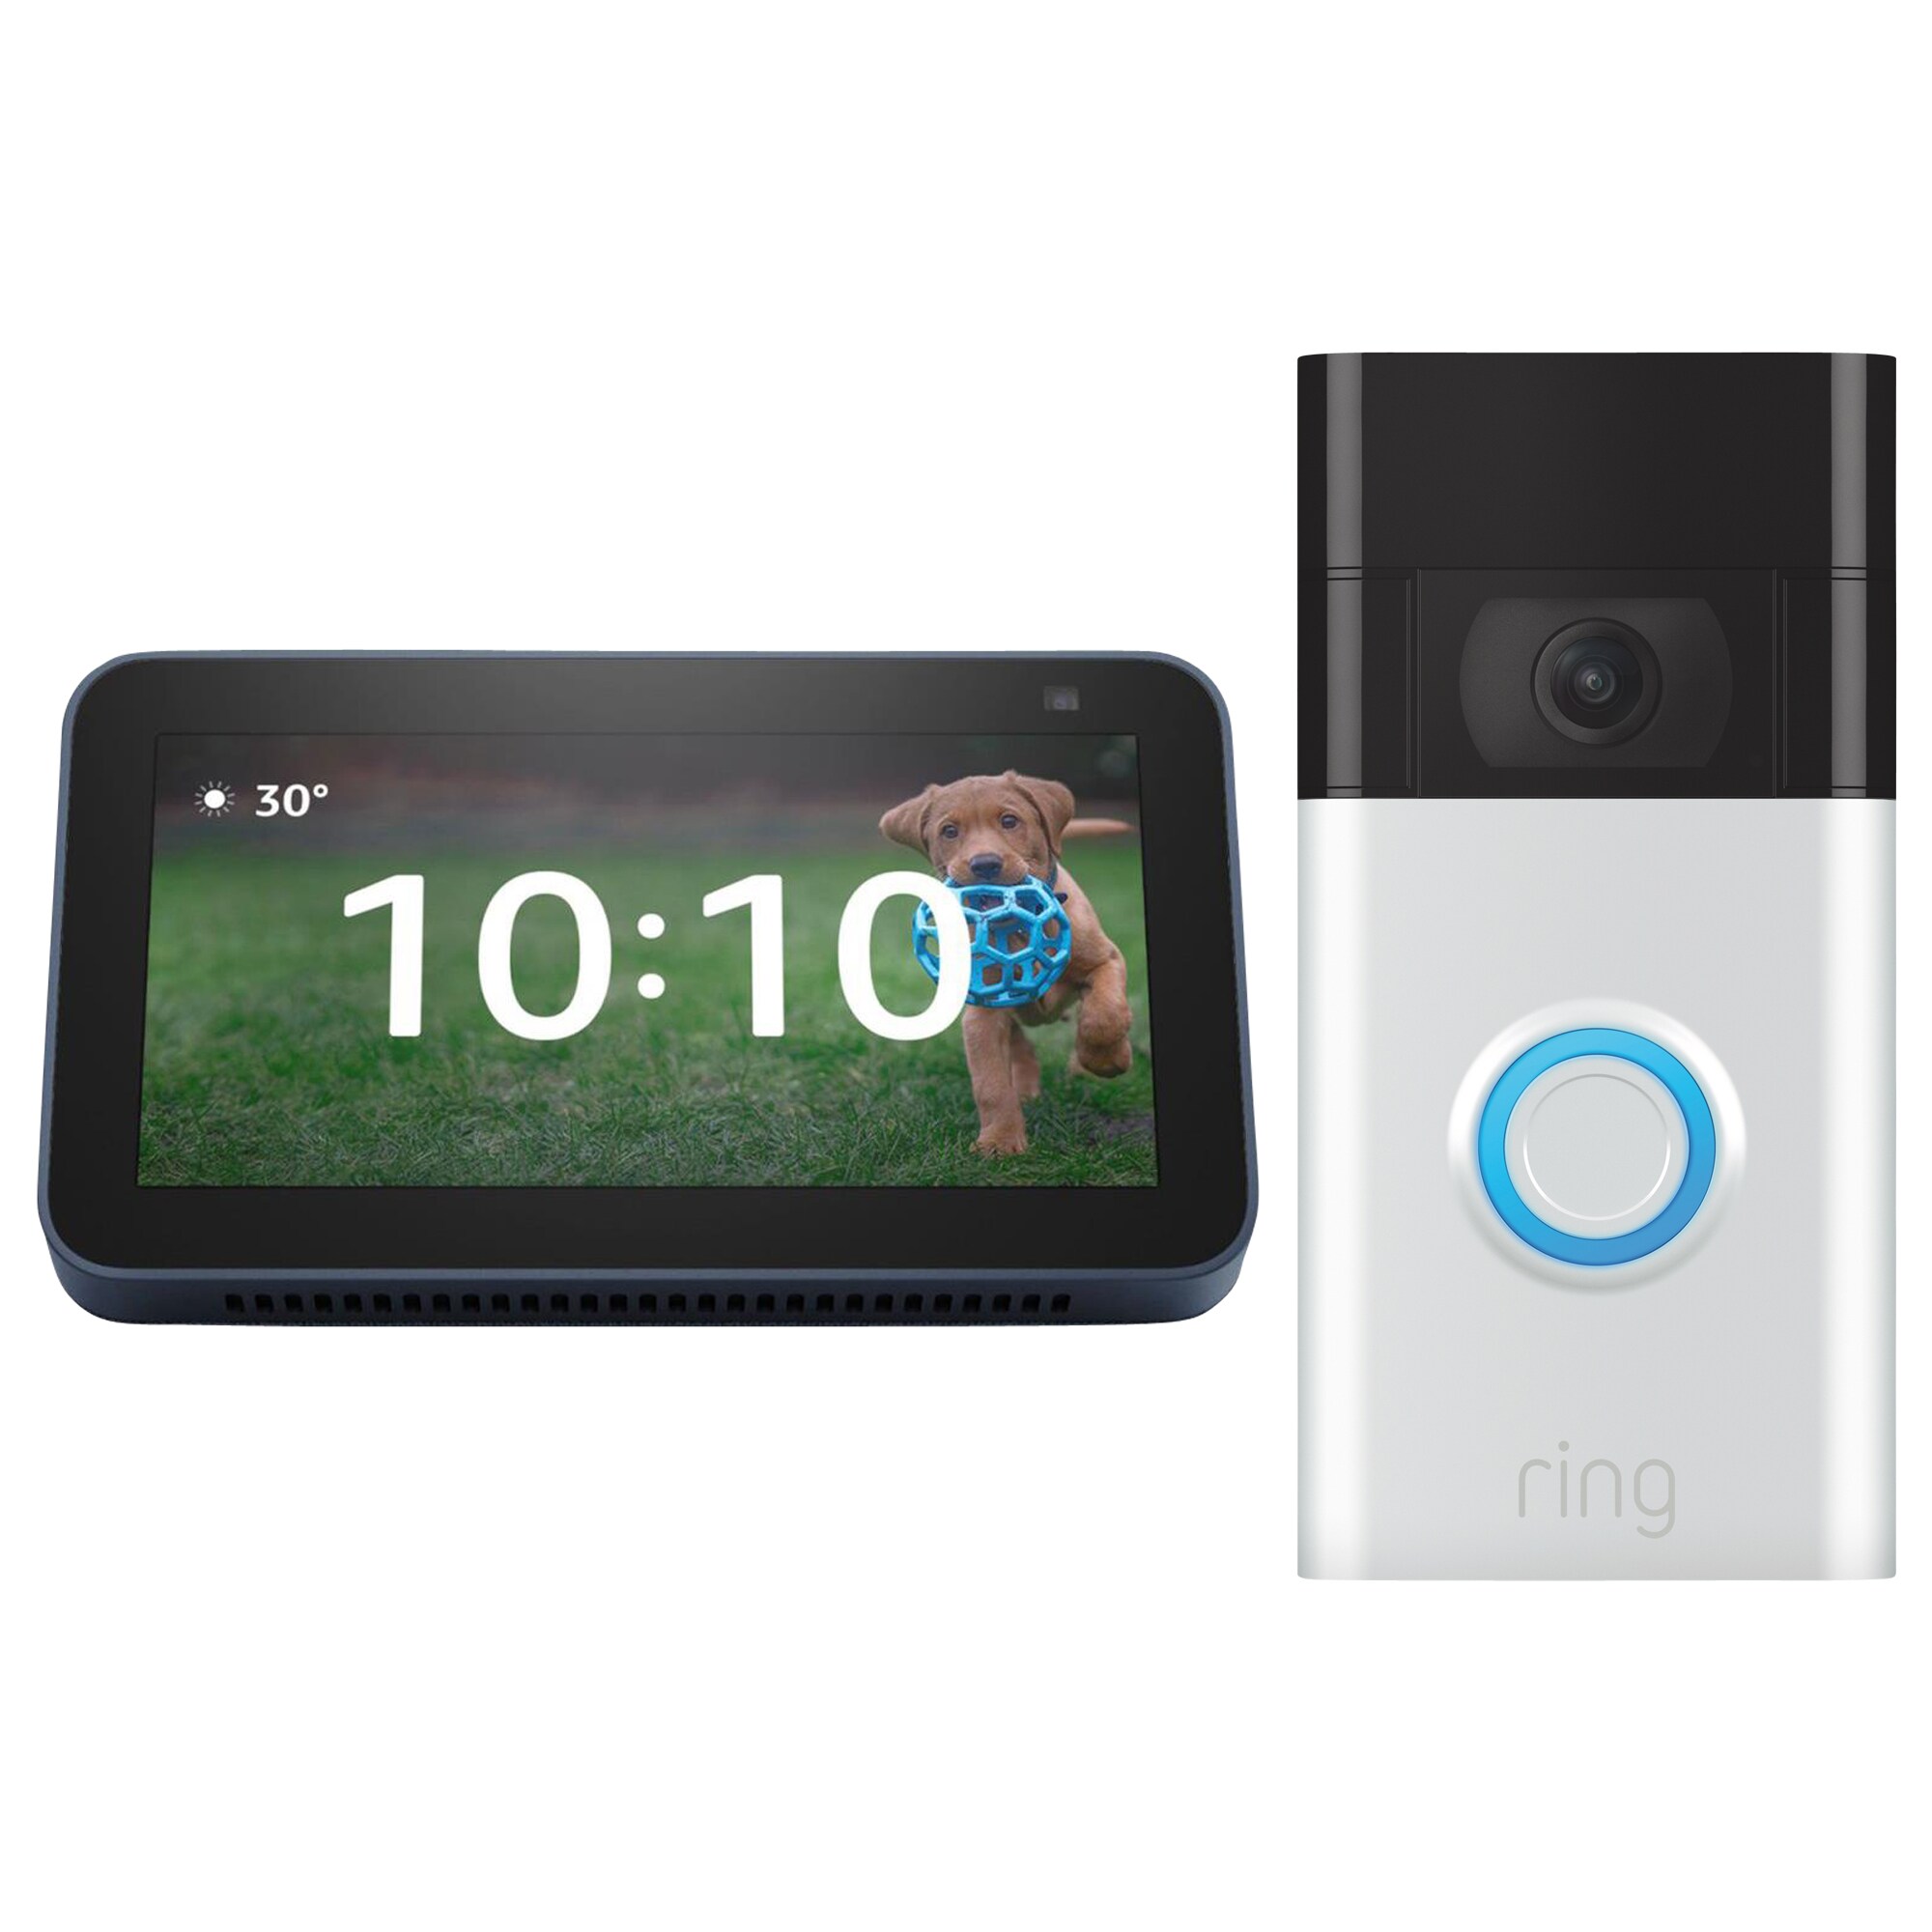 Amazon Amazon Echo Show 5 - Blue (2nd Gen) + Ring Video Doorbell - Satin NIckel Bundle